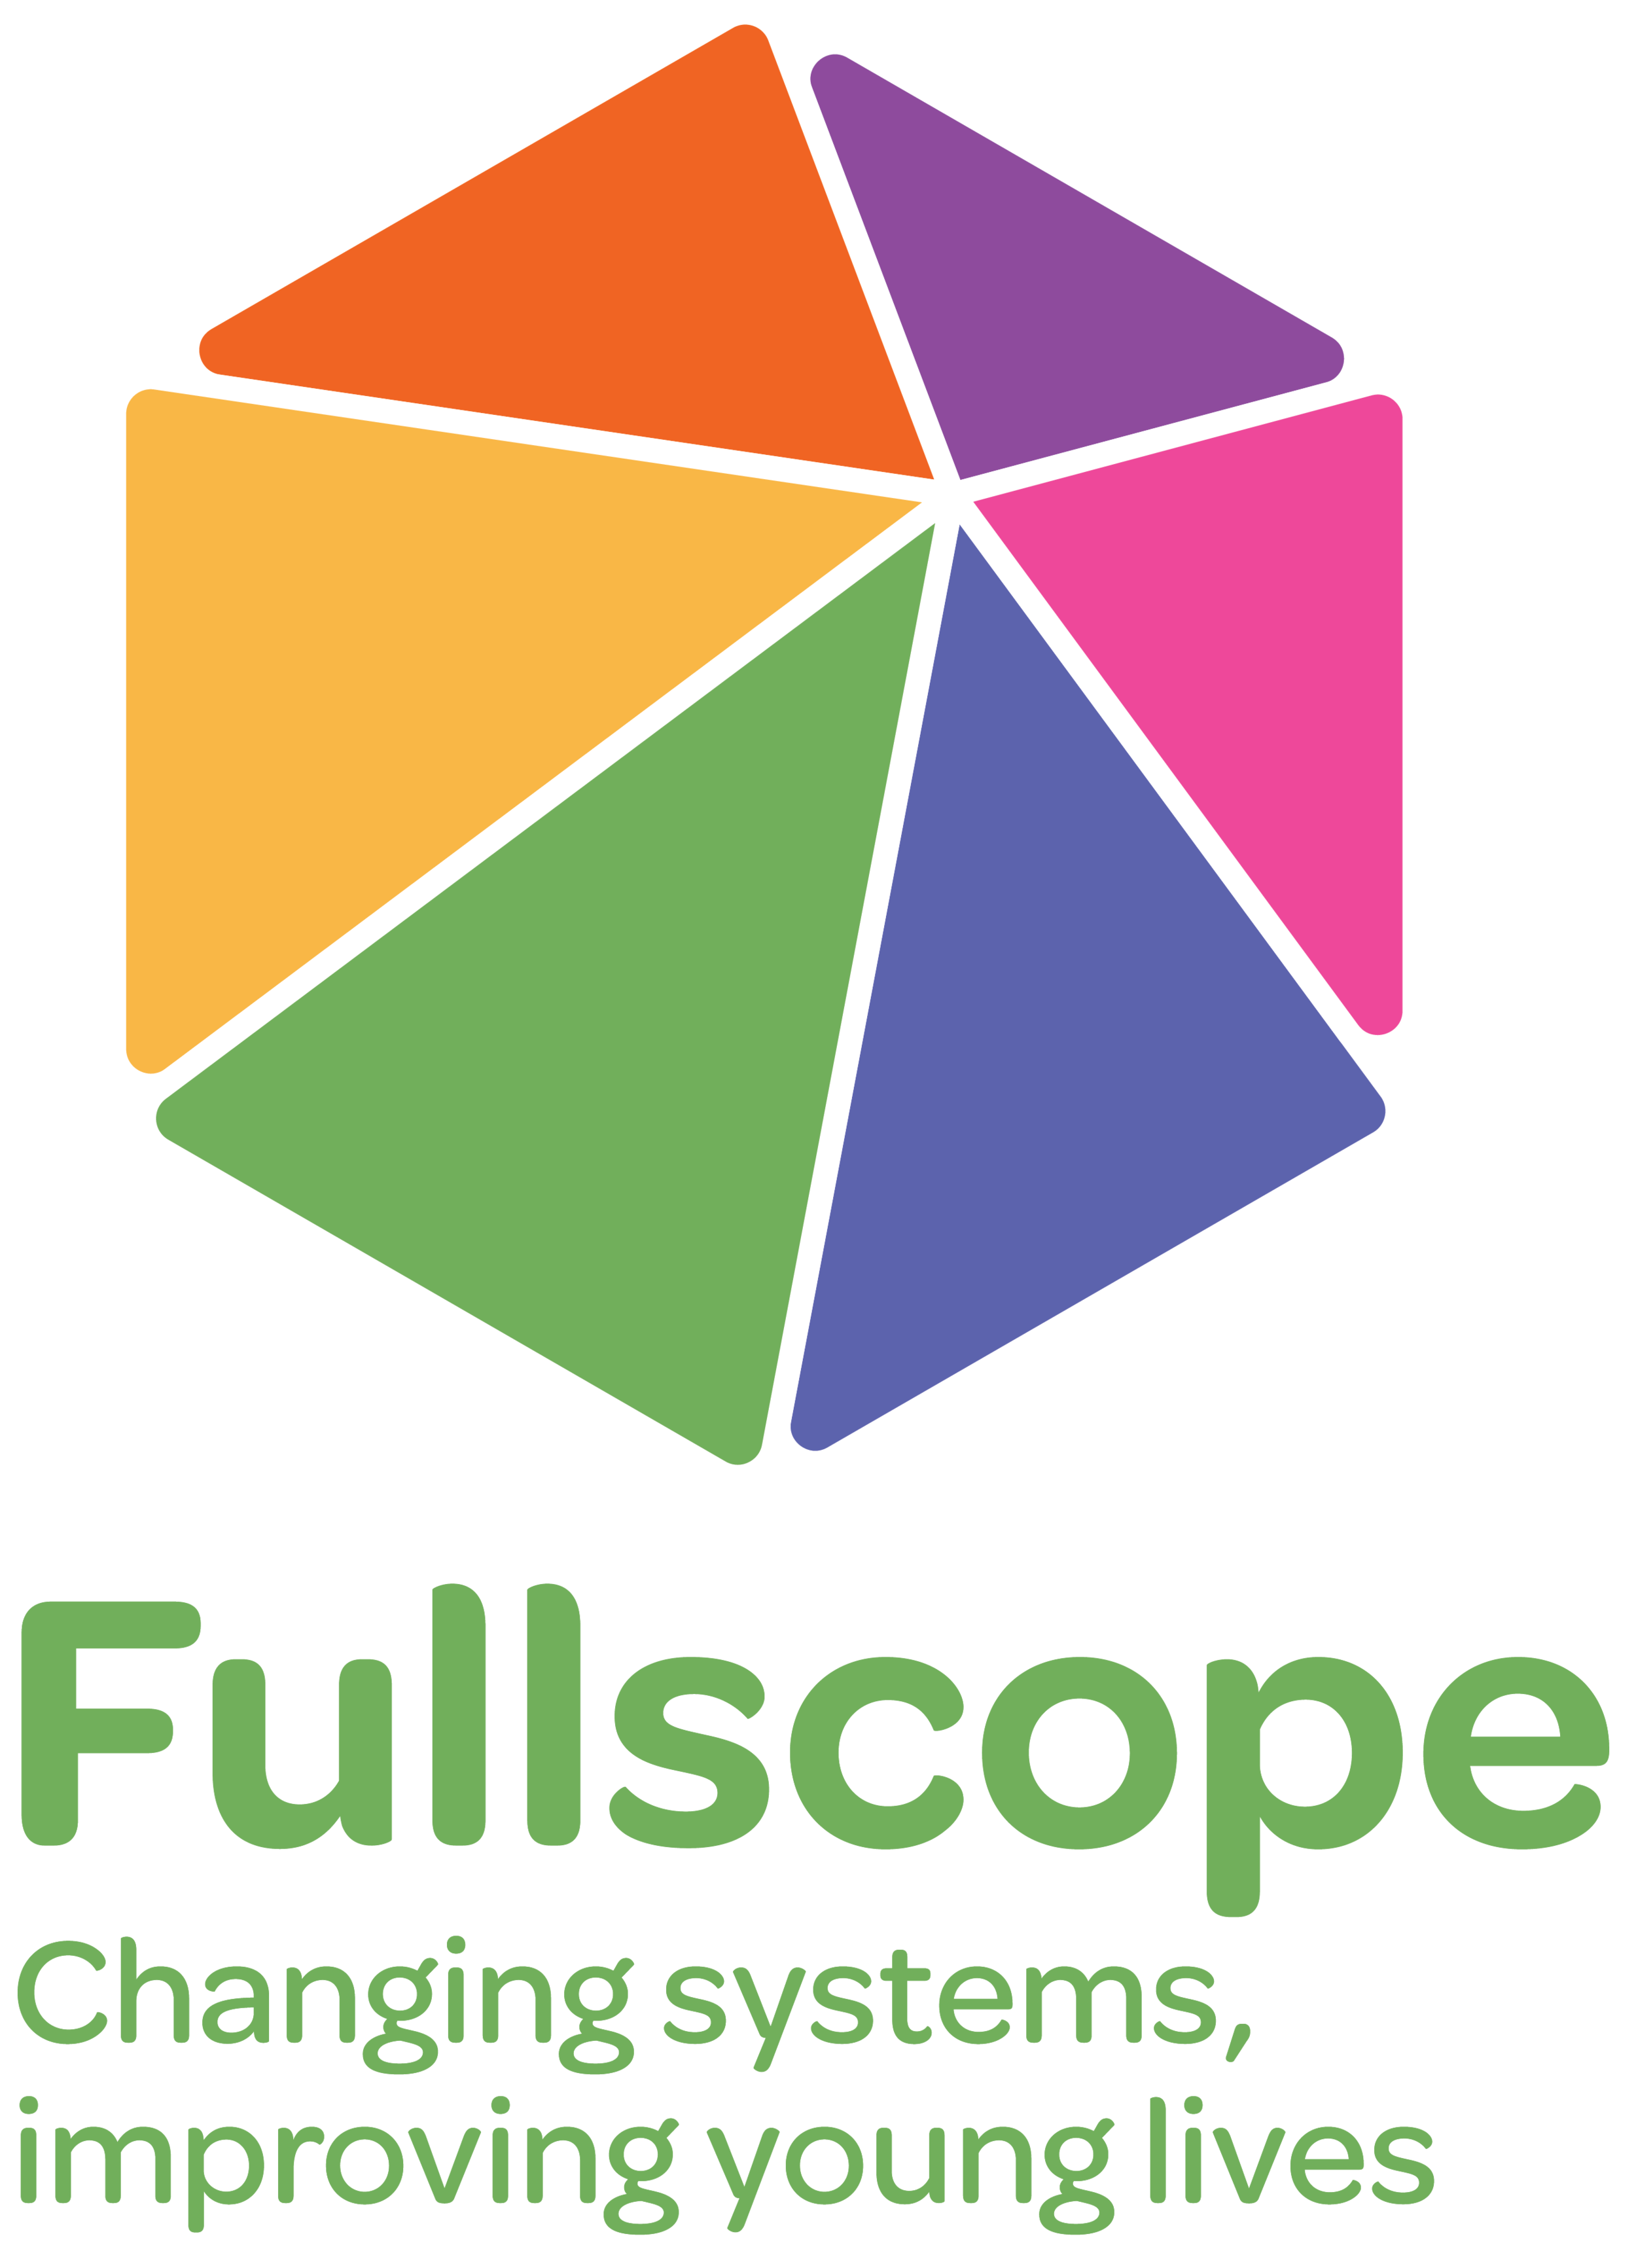 Fullscope